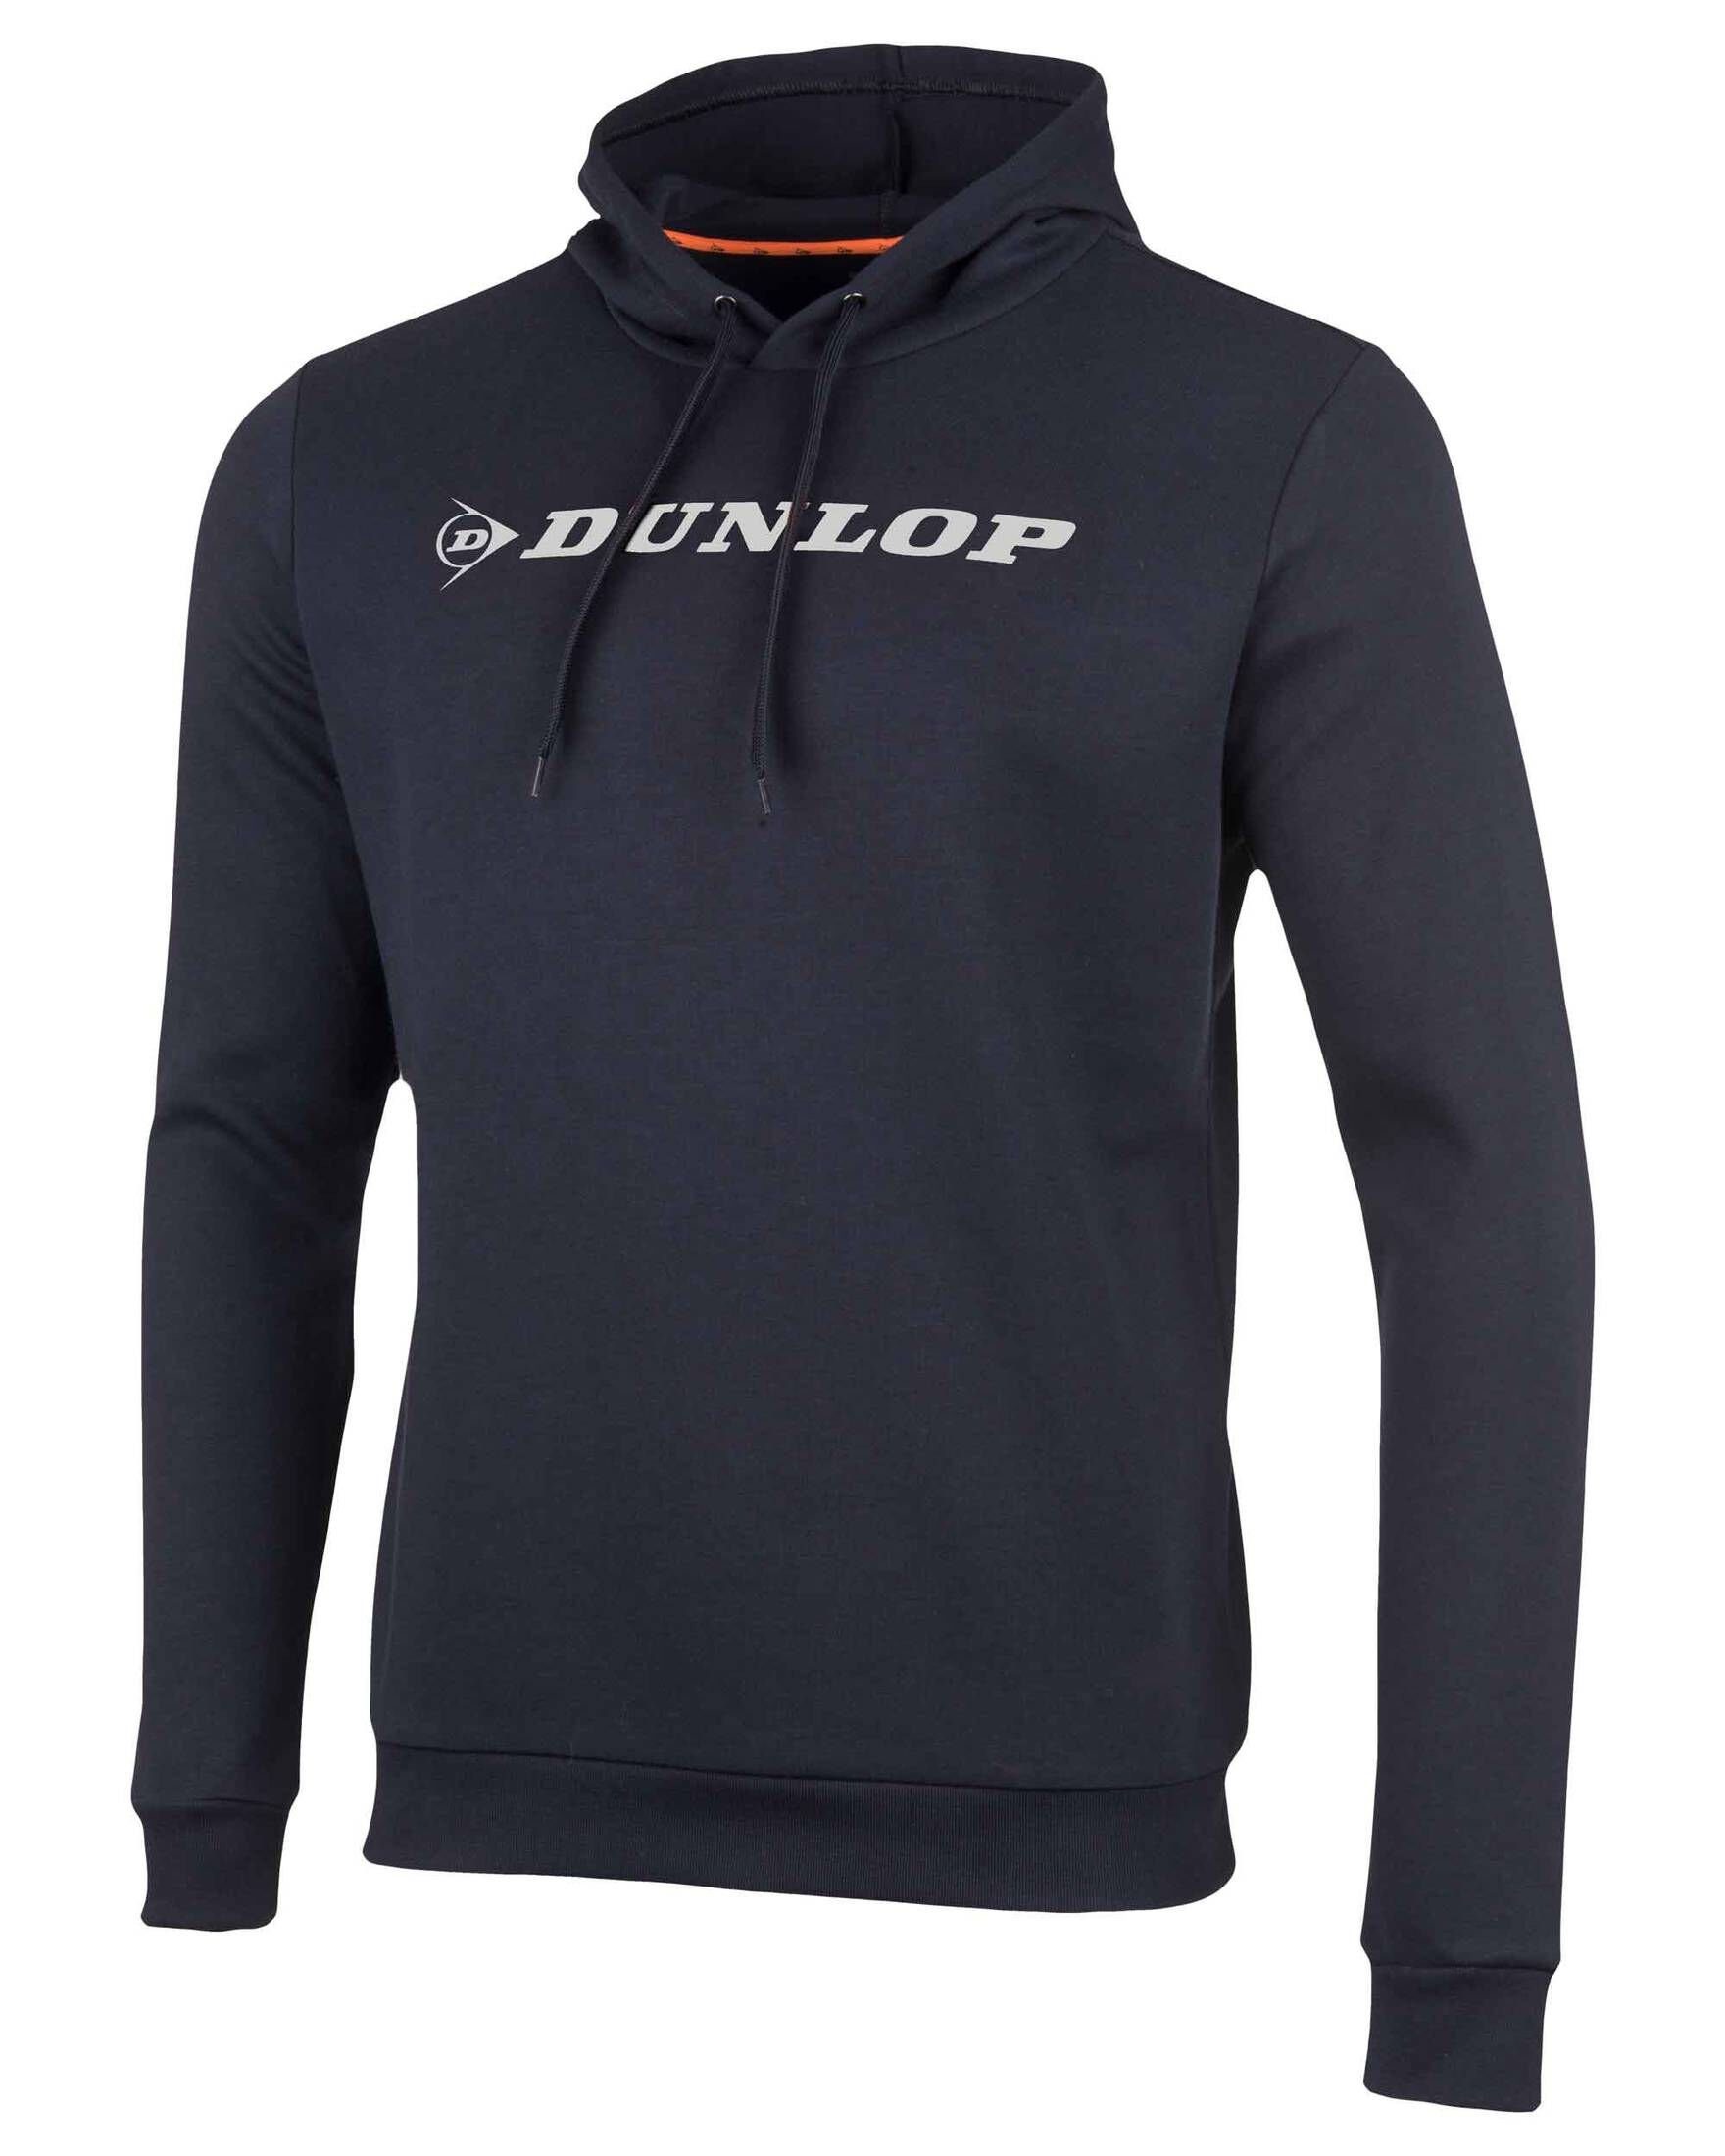 ESSENTIALS Herren Sweatshirt Sweatshirt BASIC Dunlop (1-tlg) SWEAT HOODY